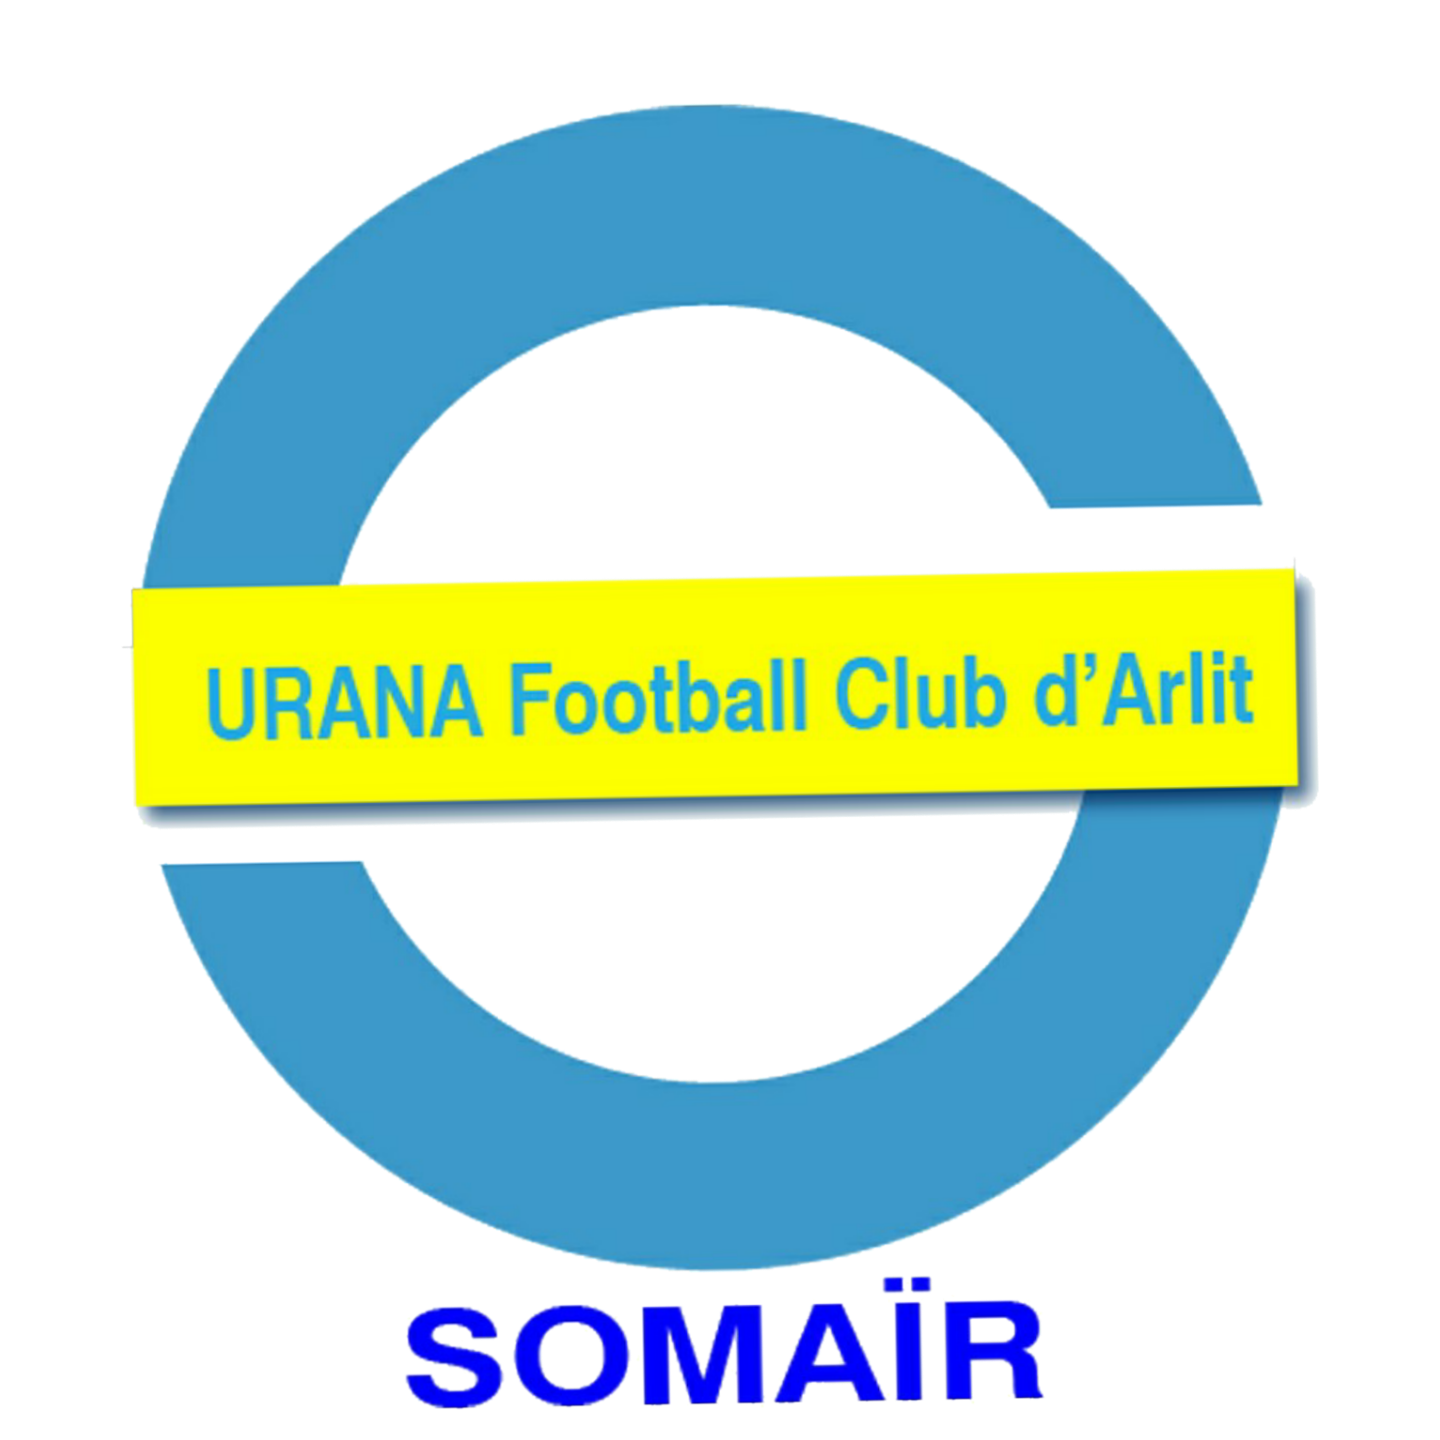 URANA FC